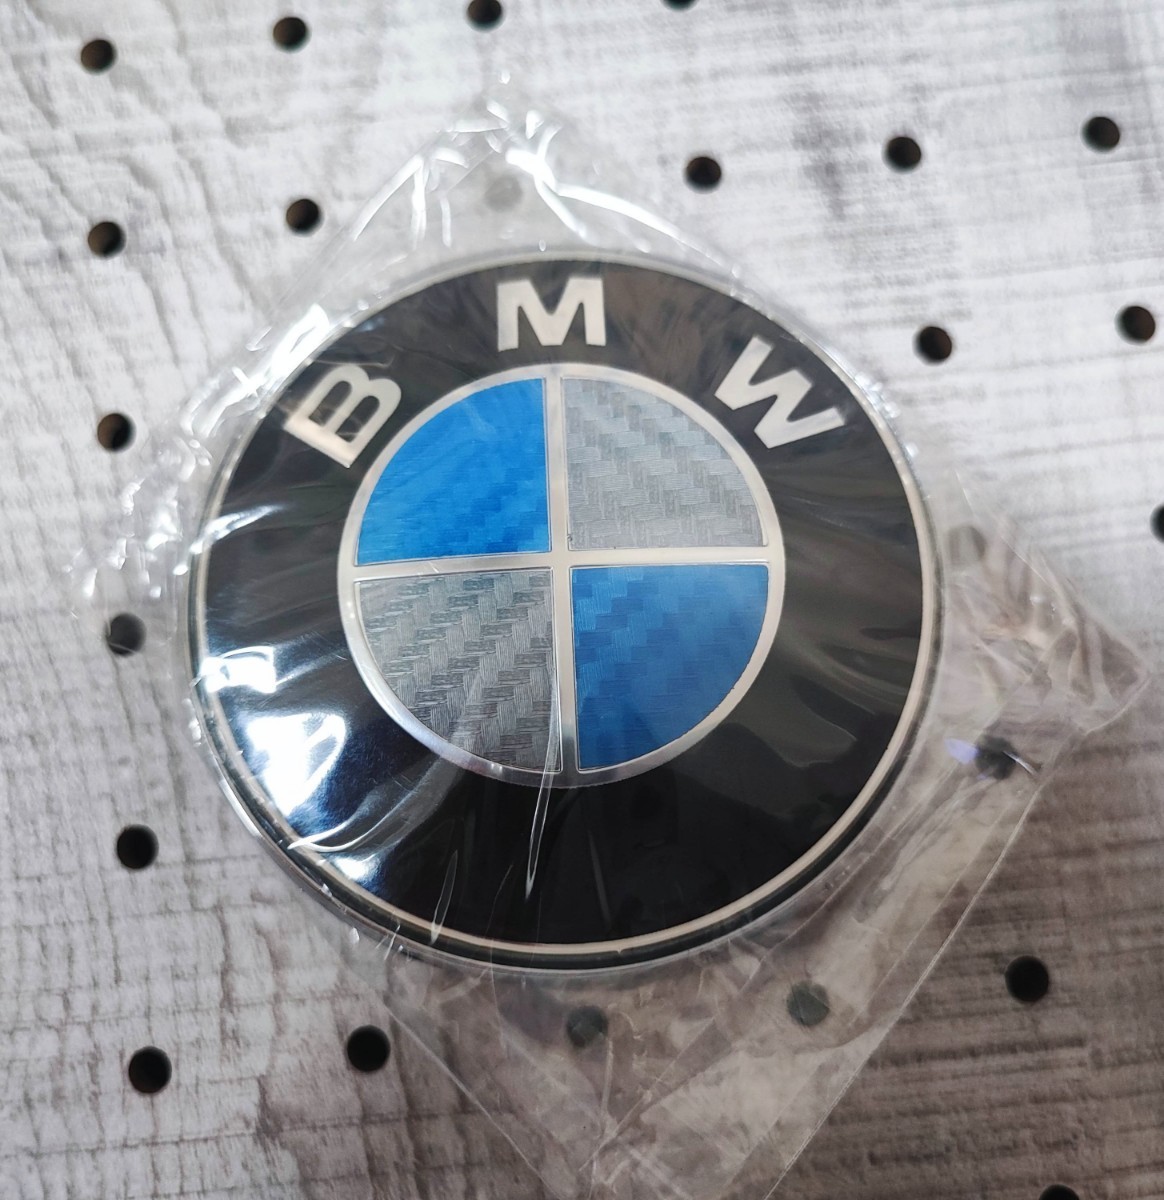 BMW リアエンブレム 74mm【ブルー×シルバーカーボン】MPerformance MSport MPower_画像4